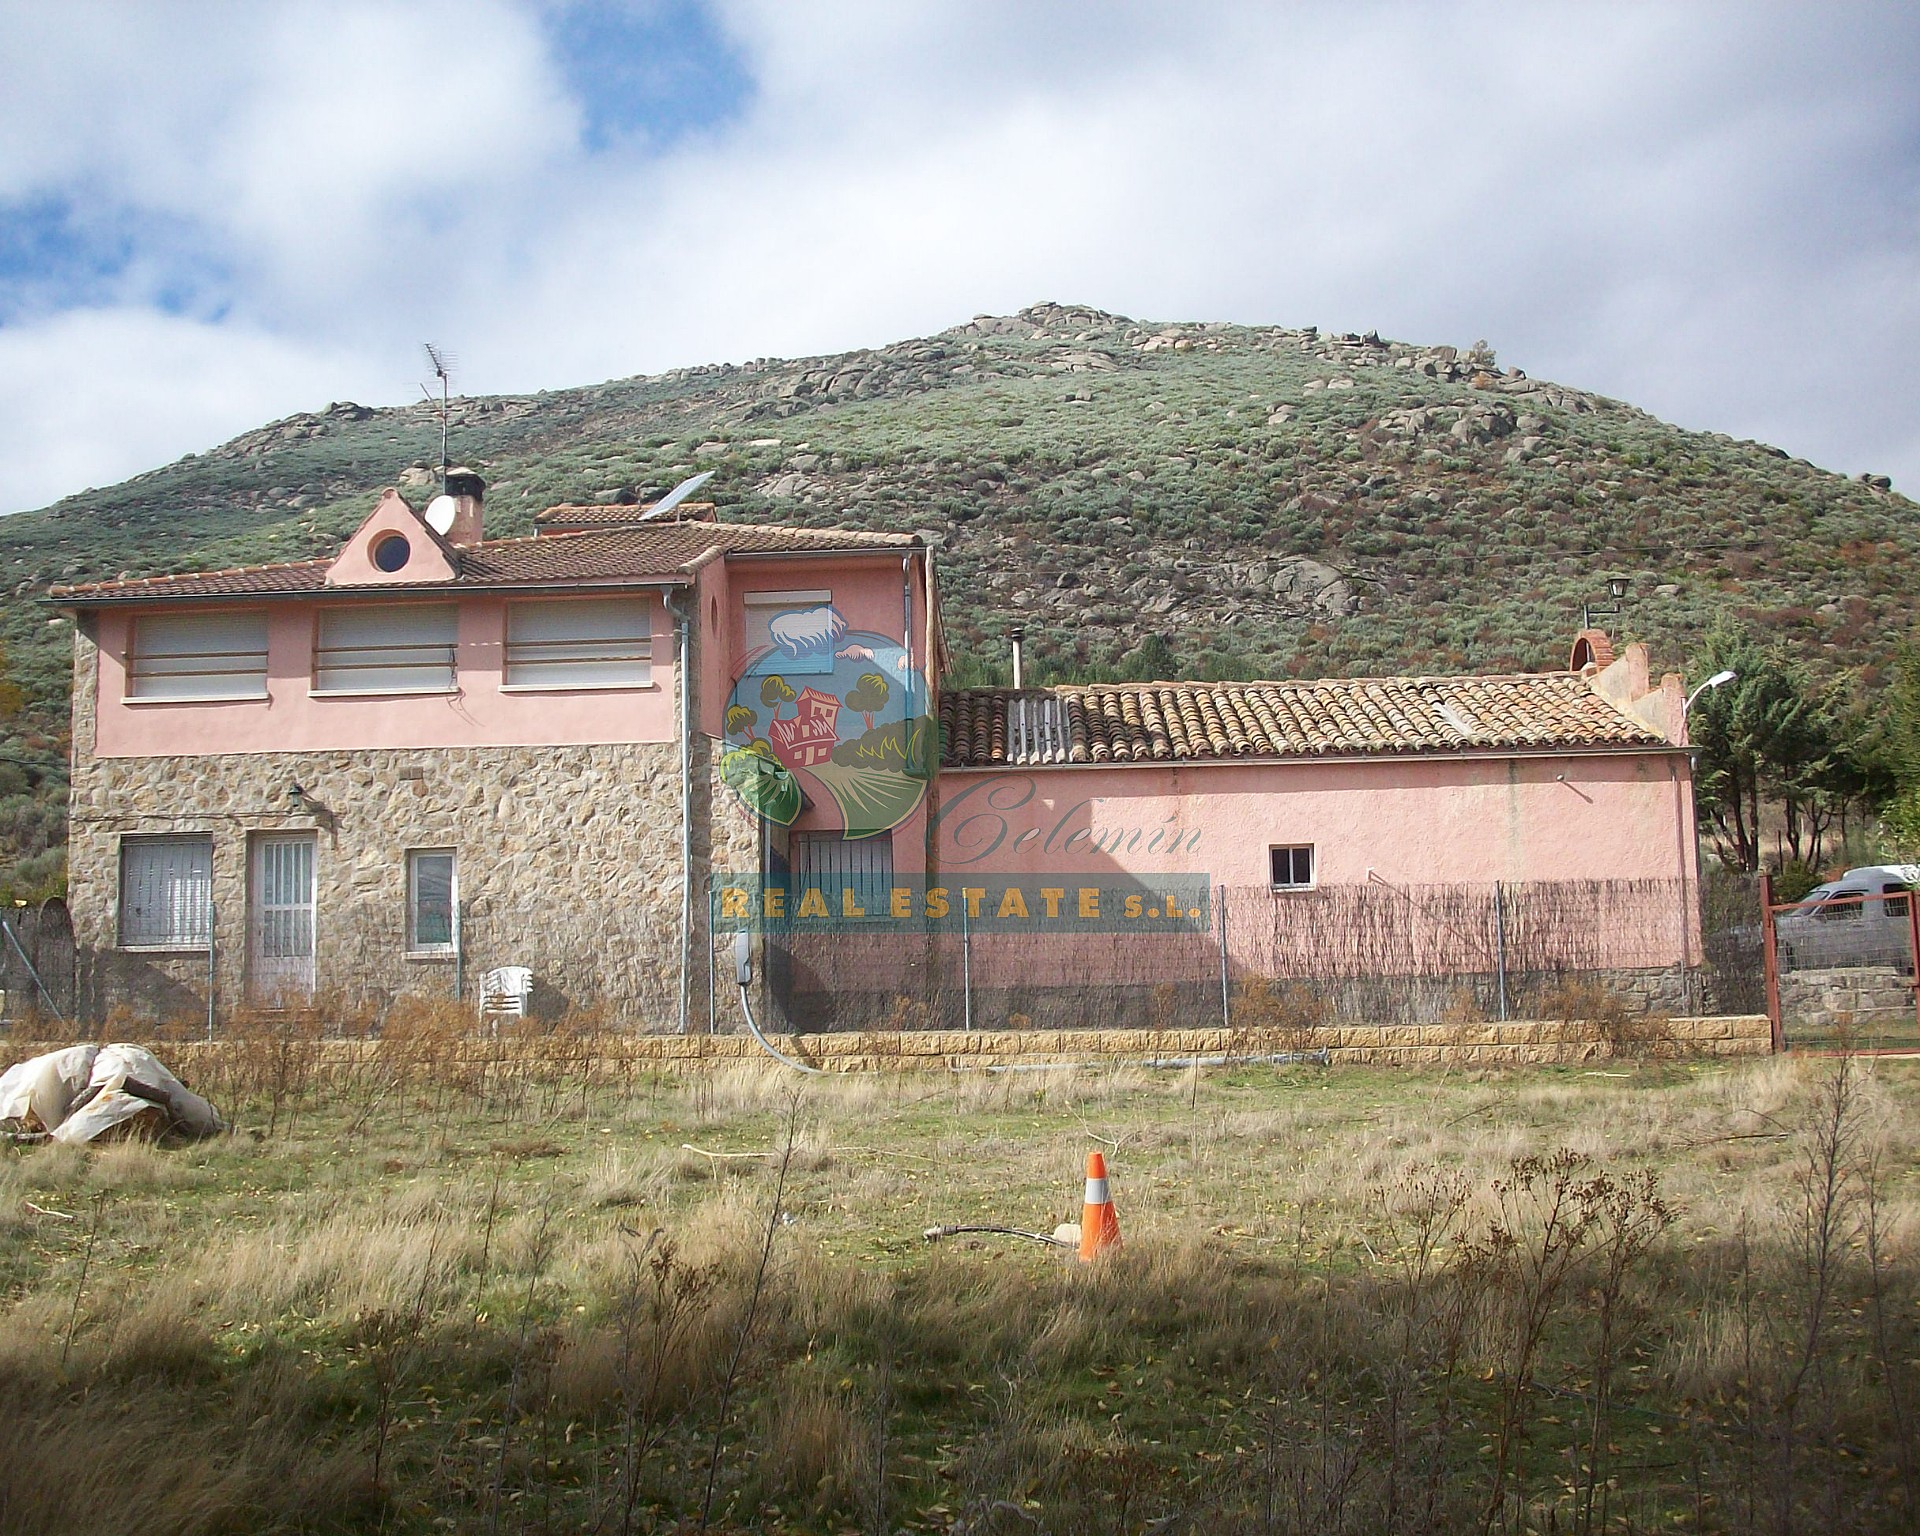 In San Martín del Pimpollar.